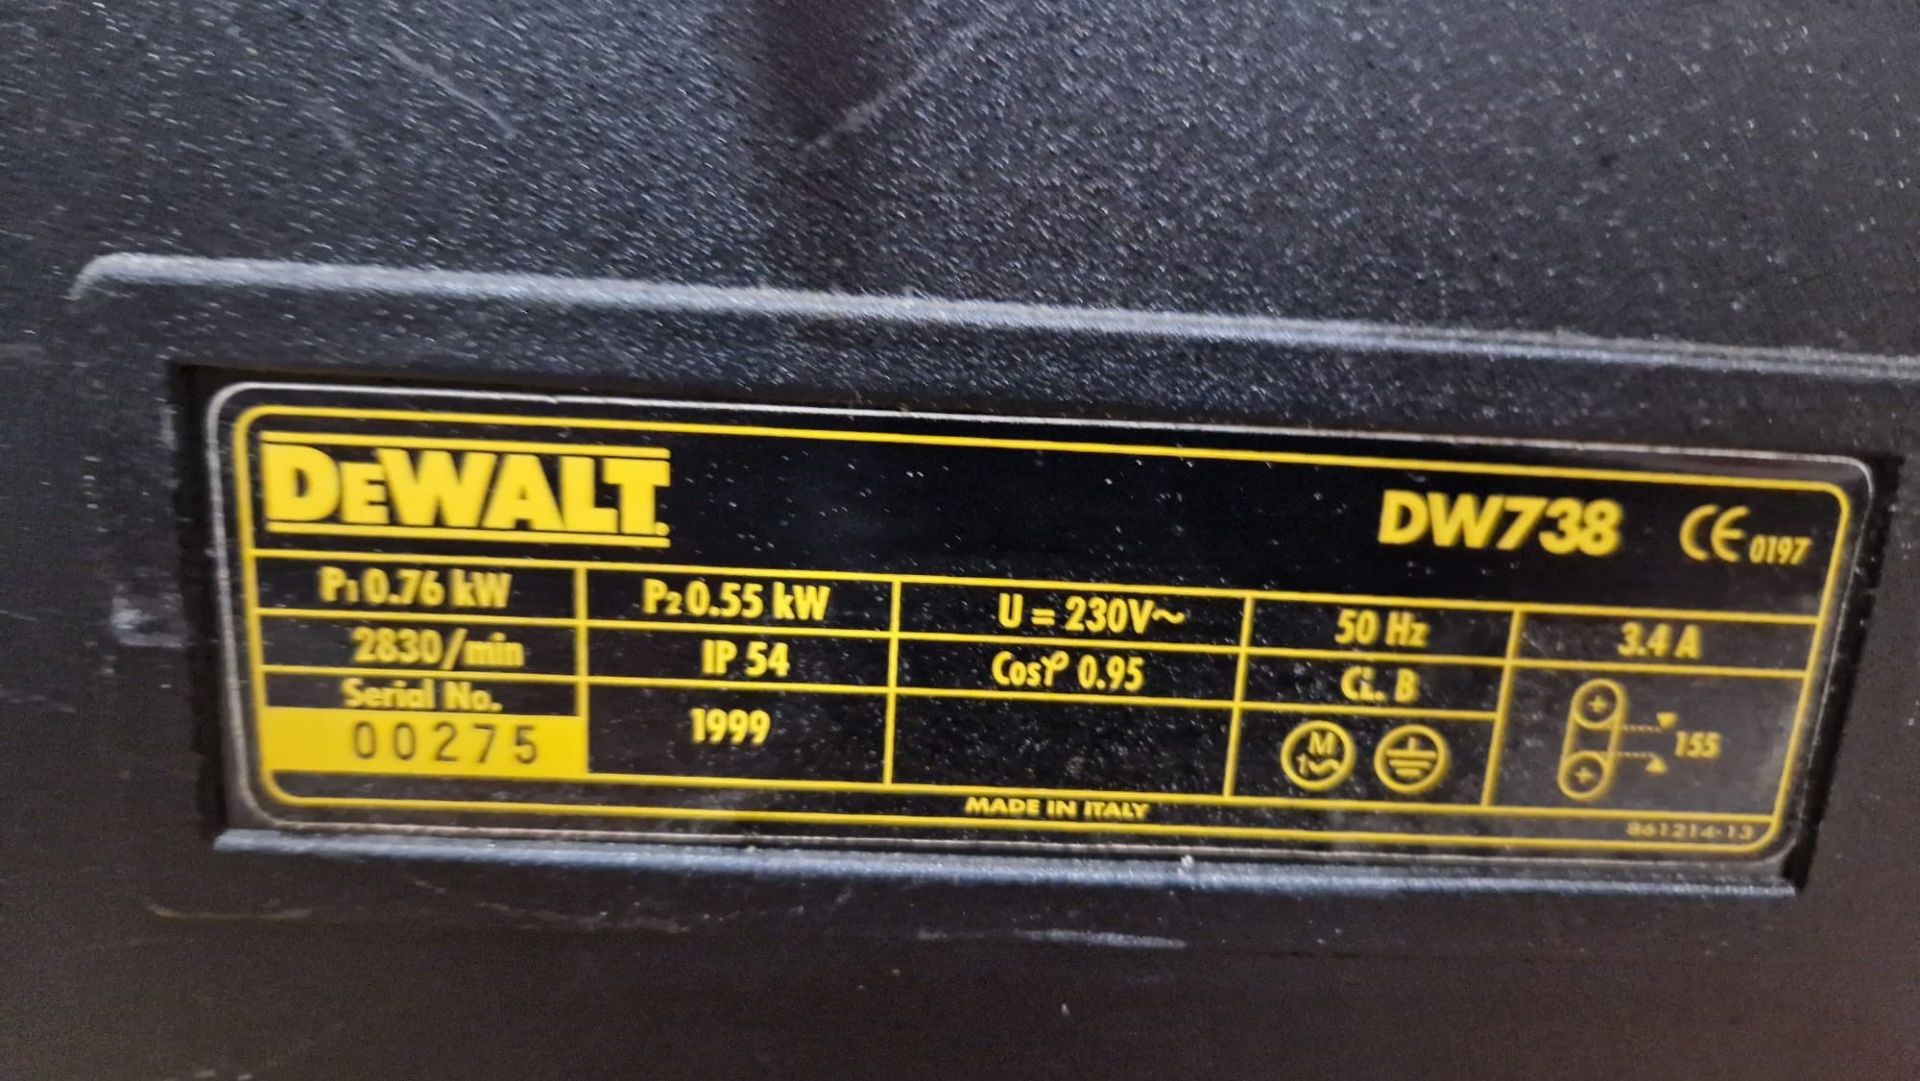 Dewalt DW 738 Vertical Bandsaw - Image 4 of 5